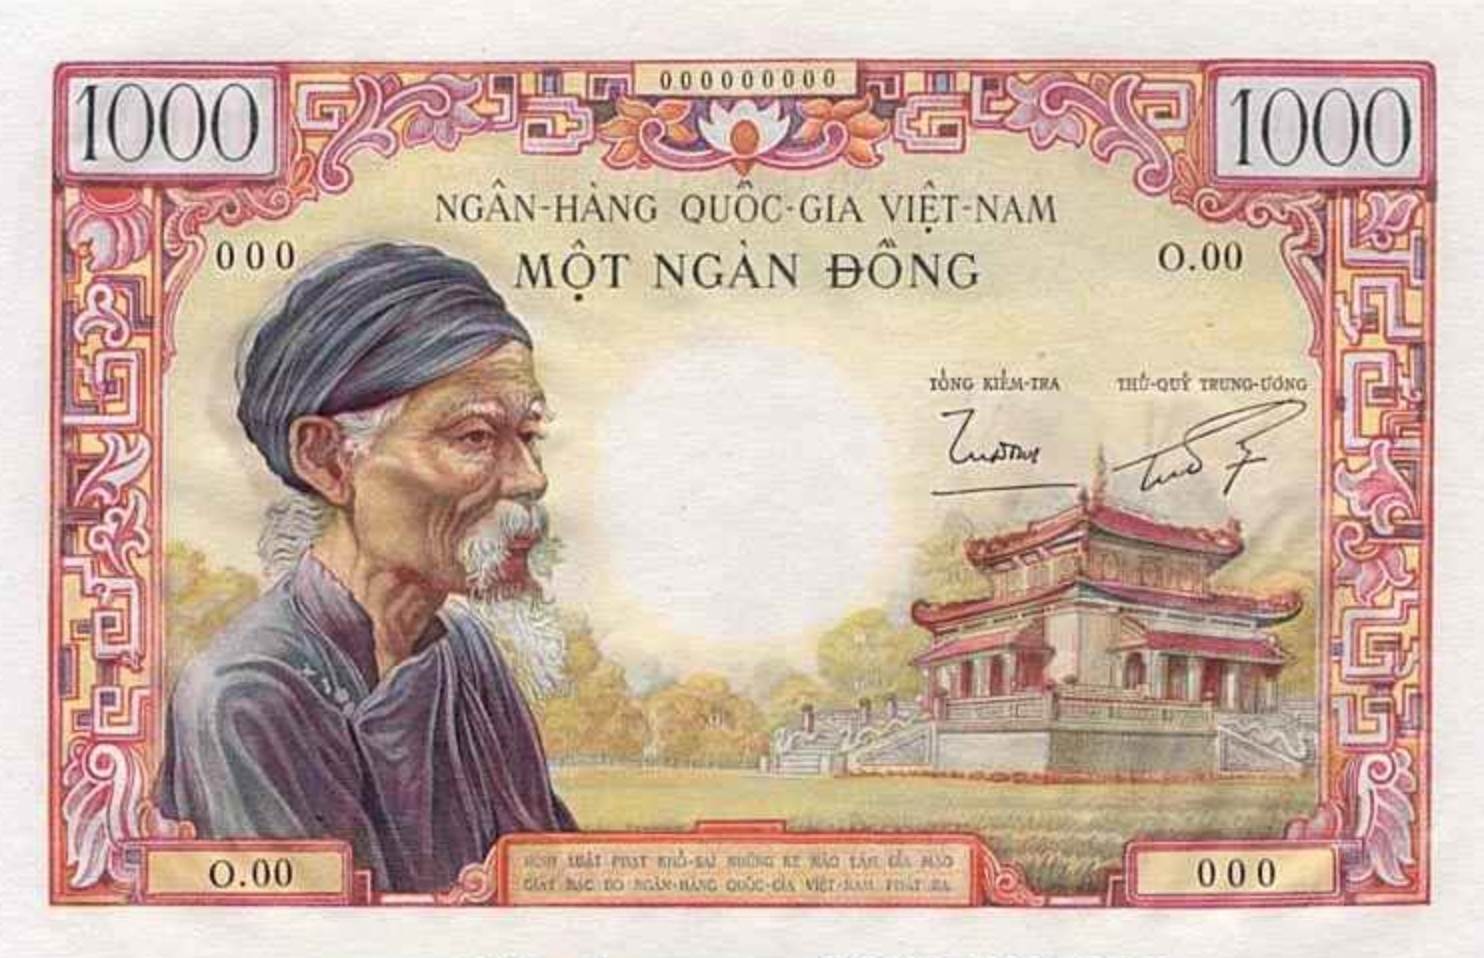 Bộ sưu tập tiền Việt Nam Cộng Hòa là một kho tàng giá trị về lịch sử và văn hóa của đất nước. Xem qua ảnh của bộ sưu tập và tìm hiểu về những cột mốc đáng nhớ trong sự phát triển của tiền bạc Việt Nam trong thời kỳ Cộng Hòa.